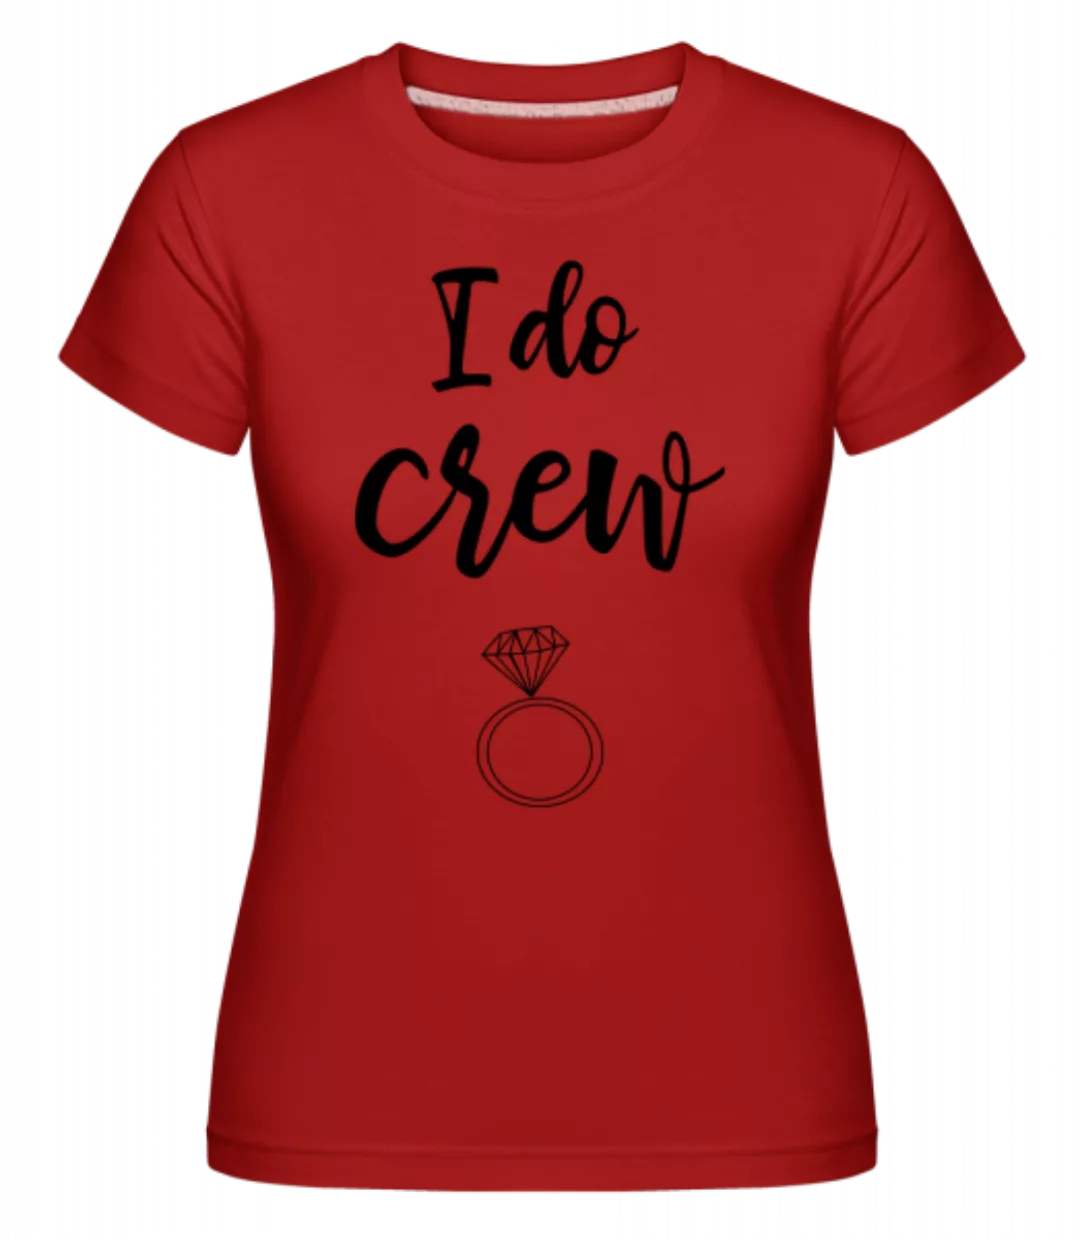 I Do Crew Ring · Shirtinator Frauen T-Shirt günstig online kaufen